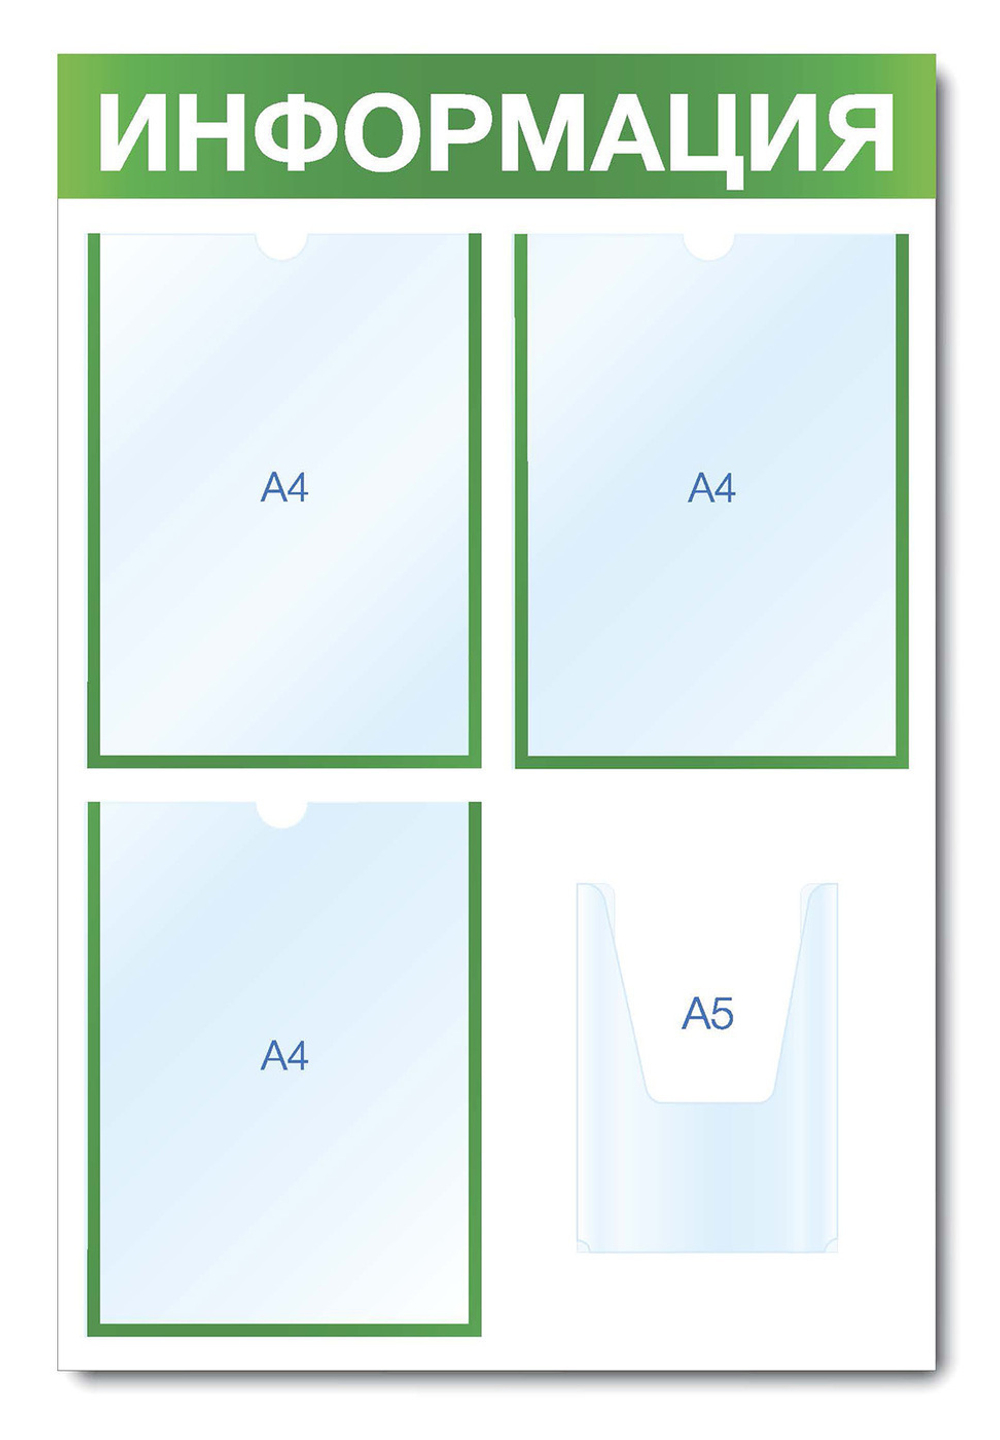 Информационный стенд - доска "ИНФОРМАЦИЯ" (50х75 см), 3 плоских кармана А4, 1 объемный карман А5, зеленый